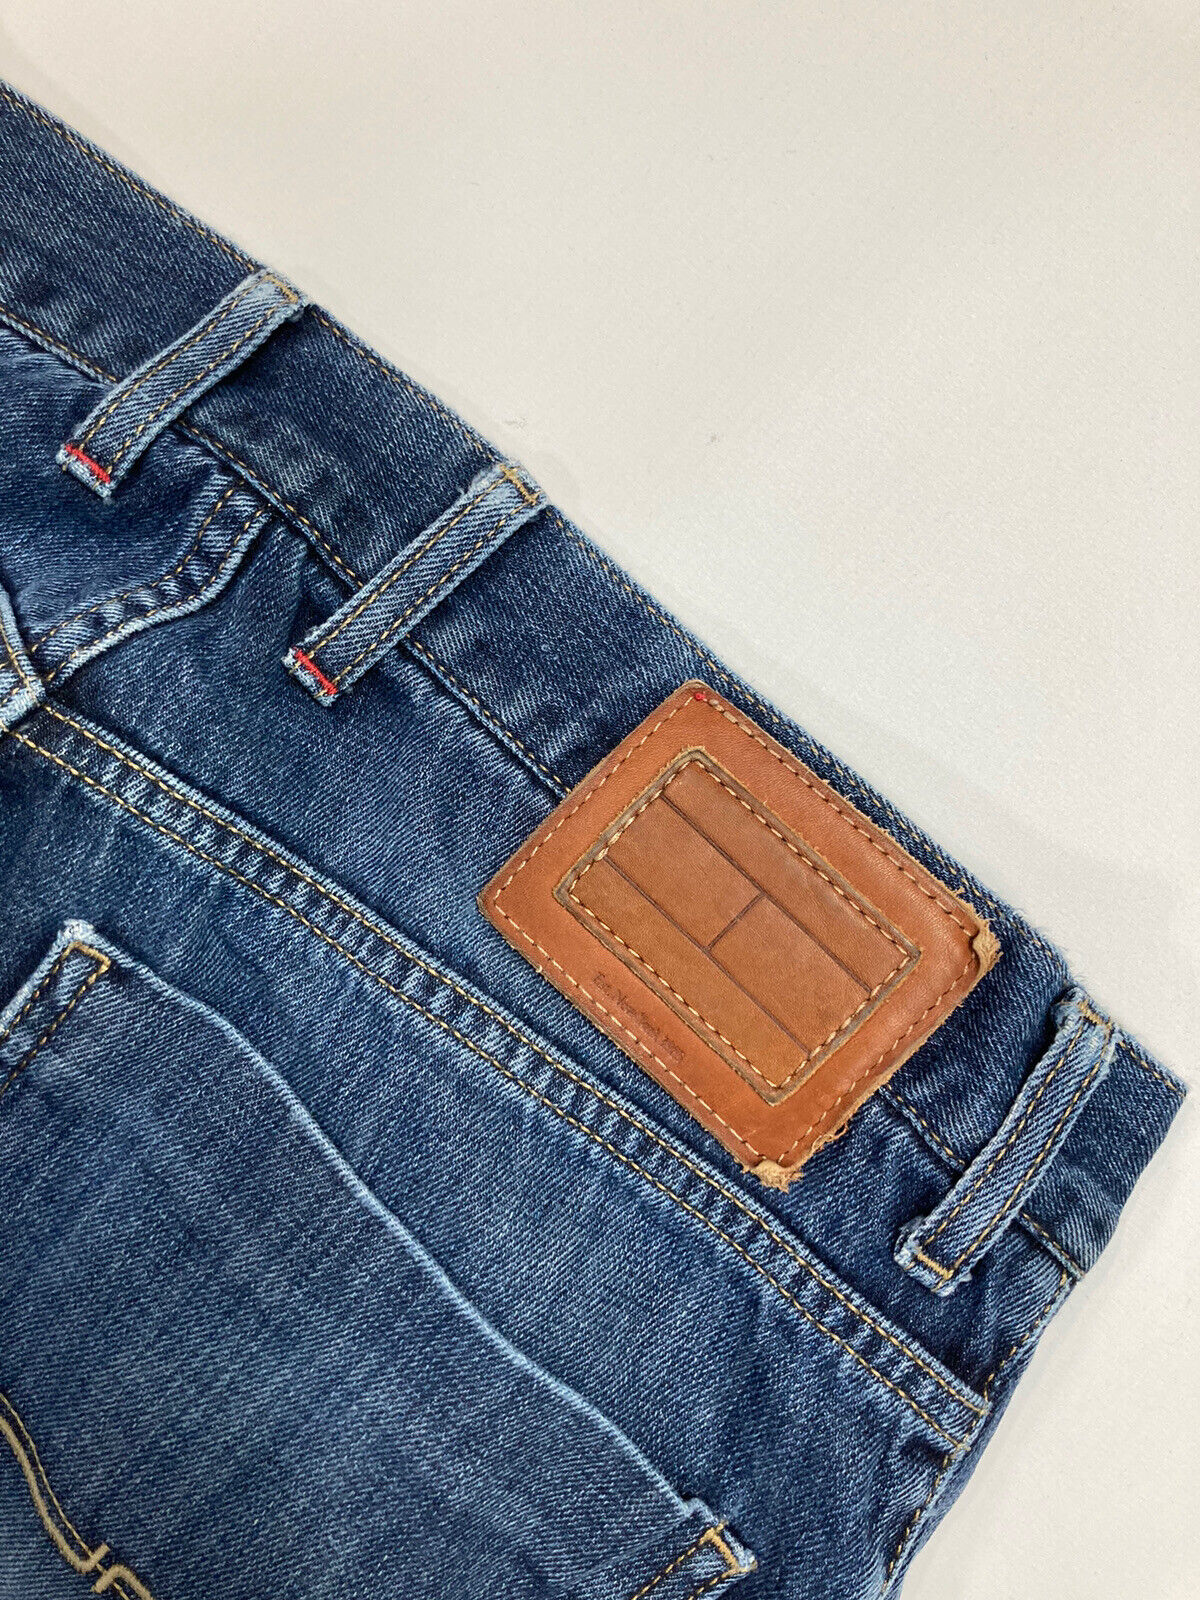 TOMMY HILFIGER MERCER Jeans - W32 L34 - Blue - Go… - image 5